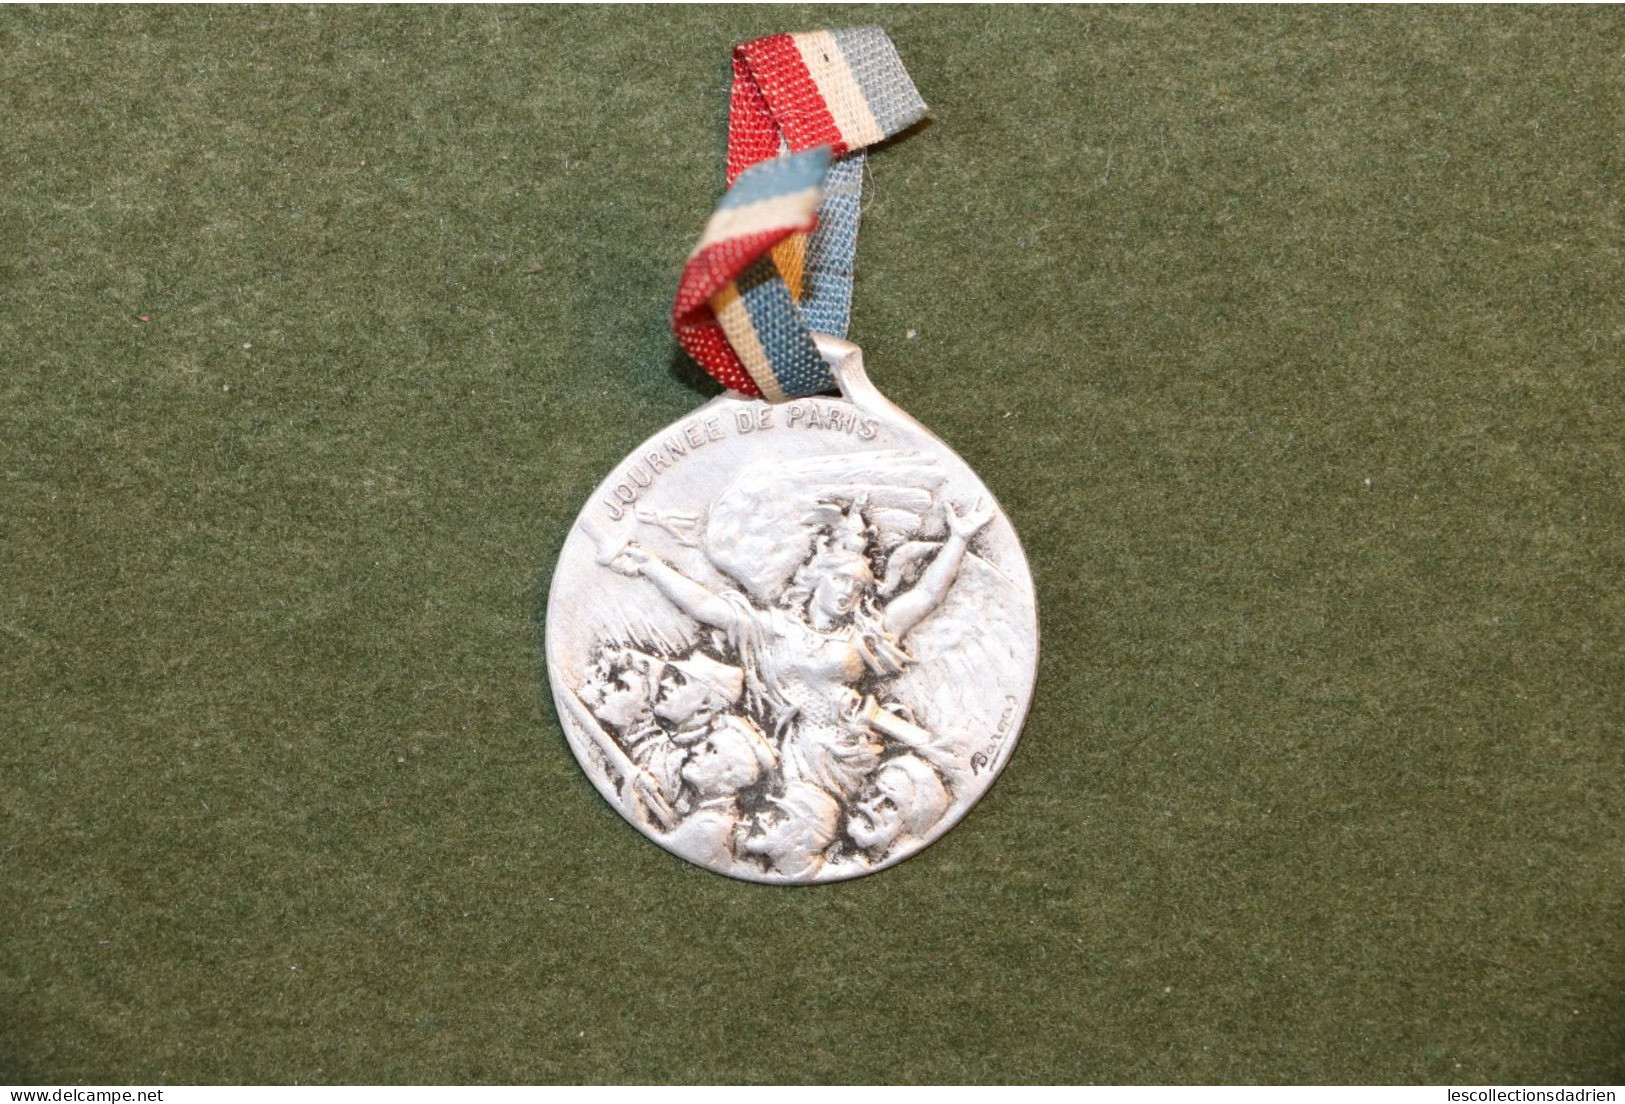 Médaille Française Journée De Paris14-18 - French Medal WWI Médaillette Journée - Bargas - Francia